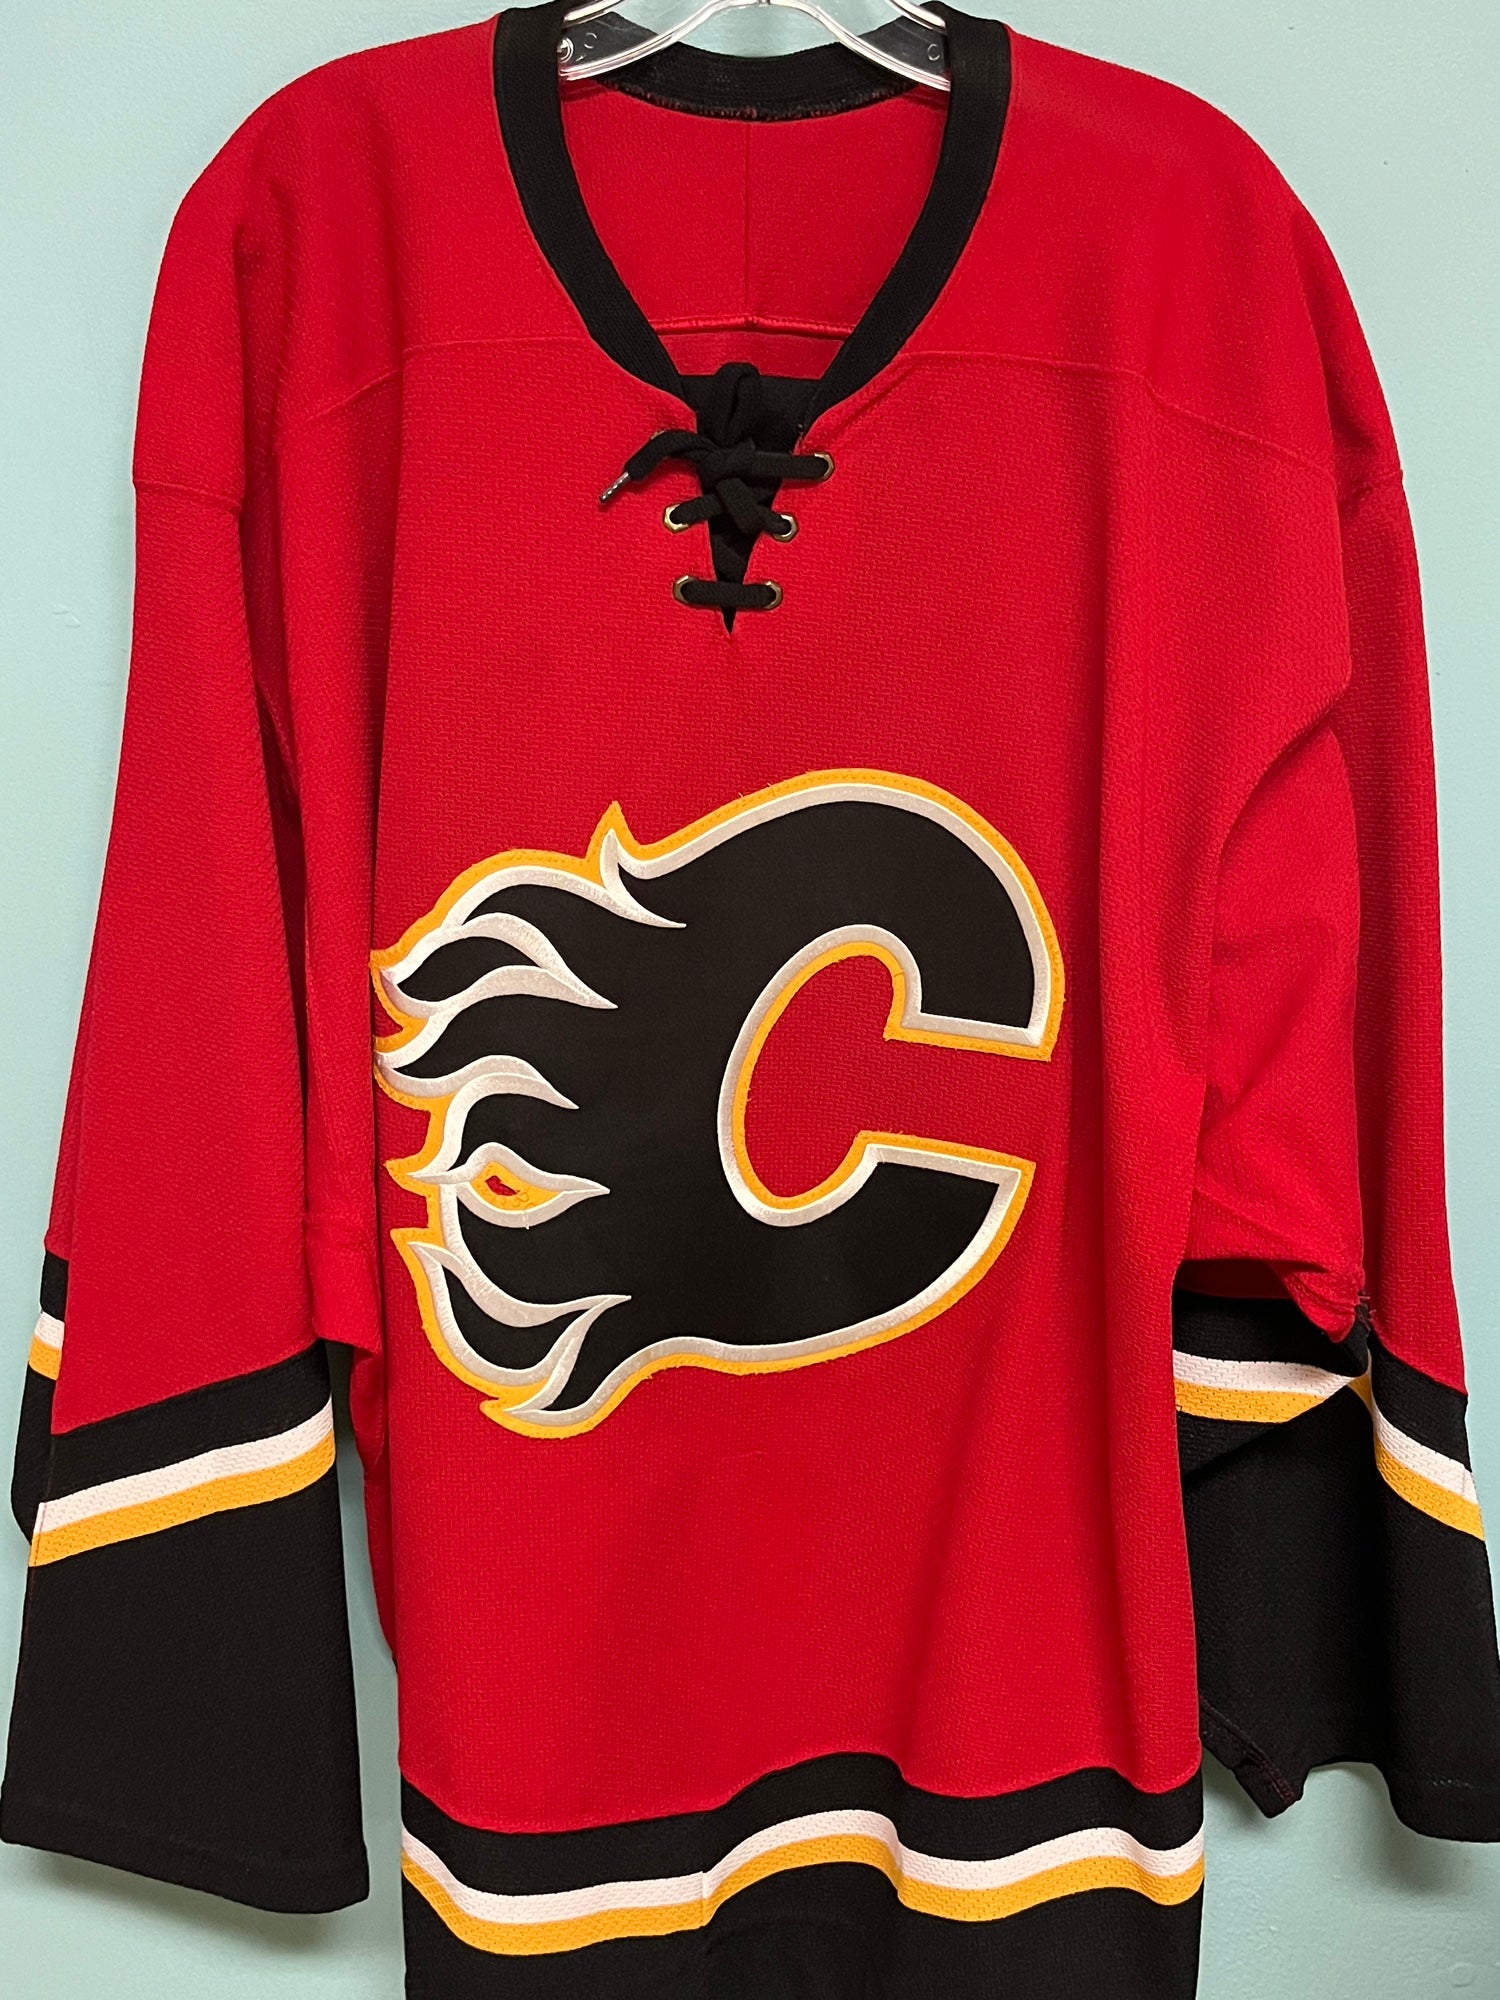 Calgary flames team jersey inspired 2022 shirt, hoodie, longsleeve